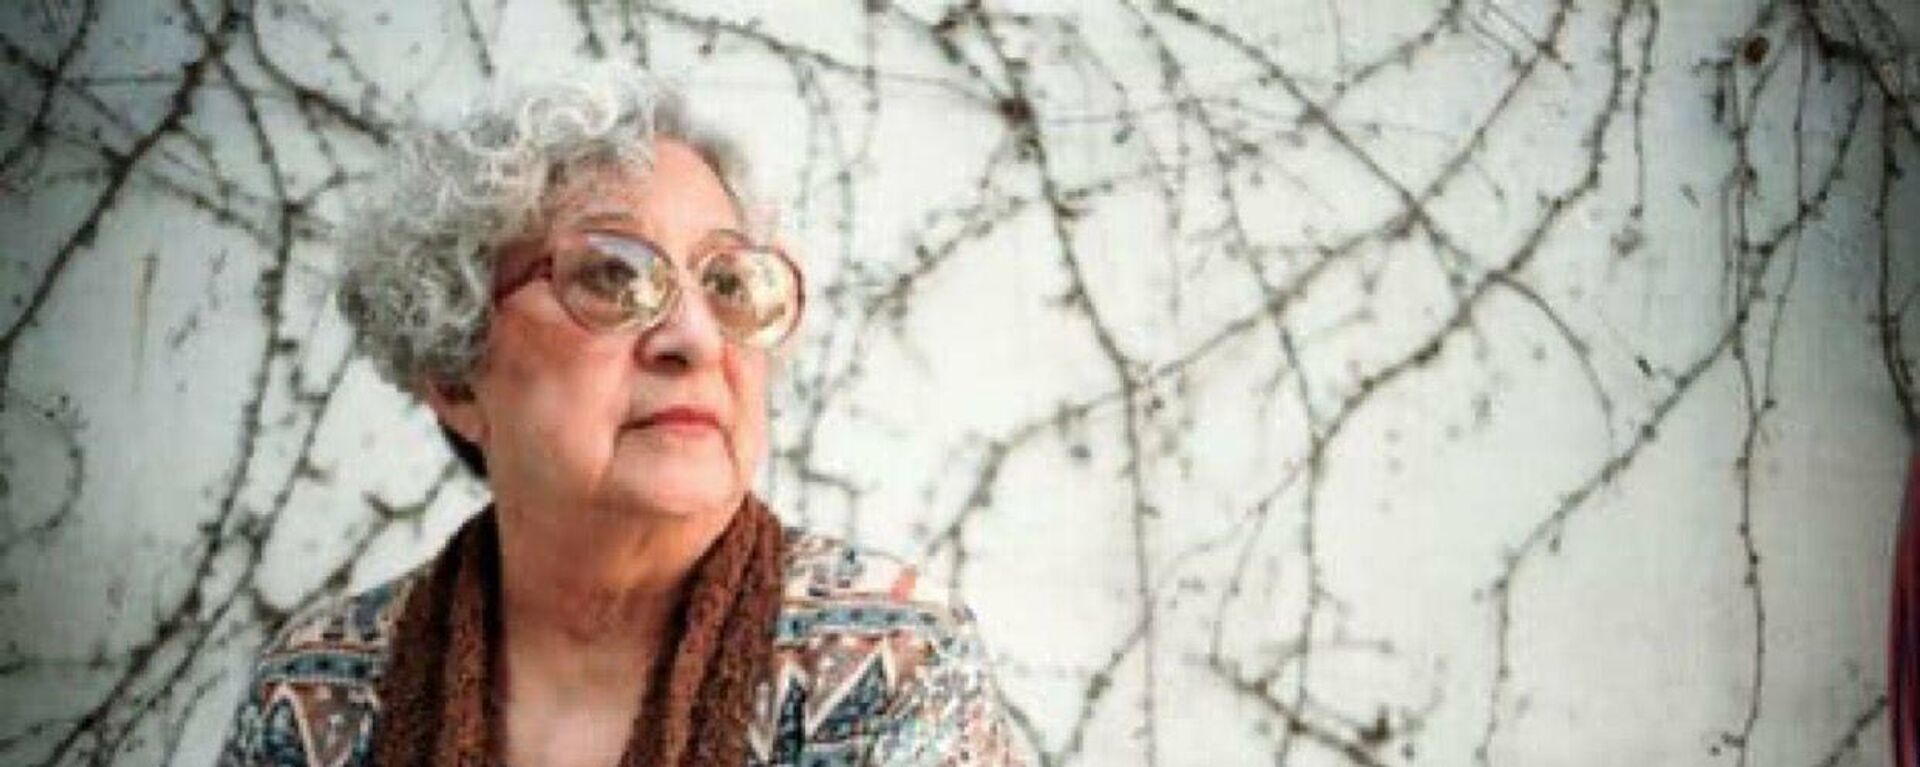 Thelma Jara de Cabezas,  sobreviviente de la última dictadura argentina (1976-1983) e integrante de la organización Madres de Plaza de Mayo - Sputnik Mundo, 1920, 22.10.2021